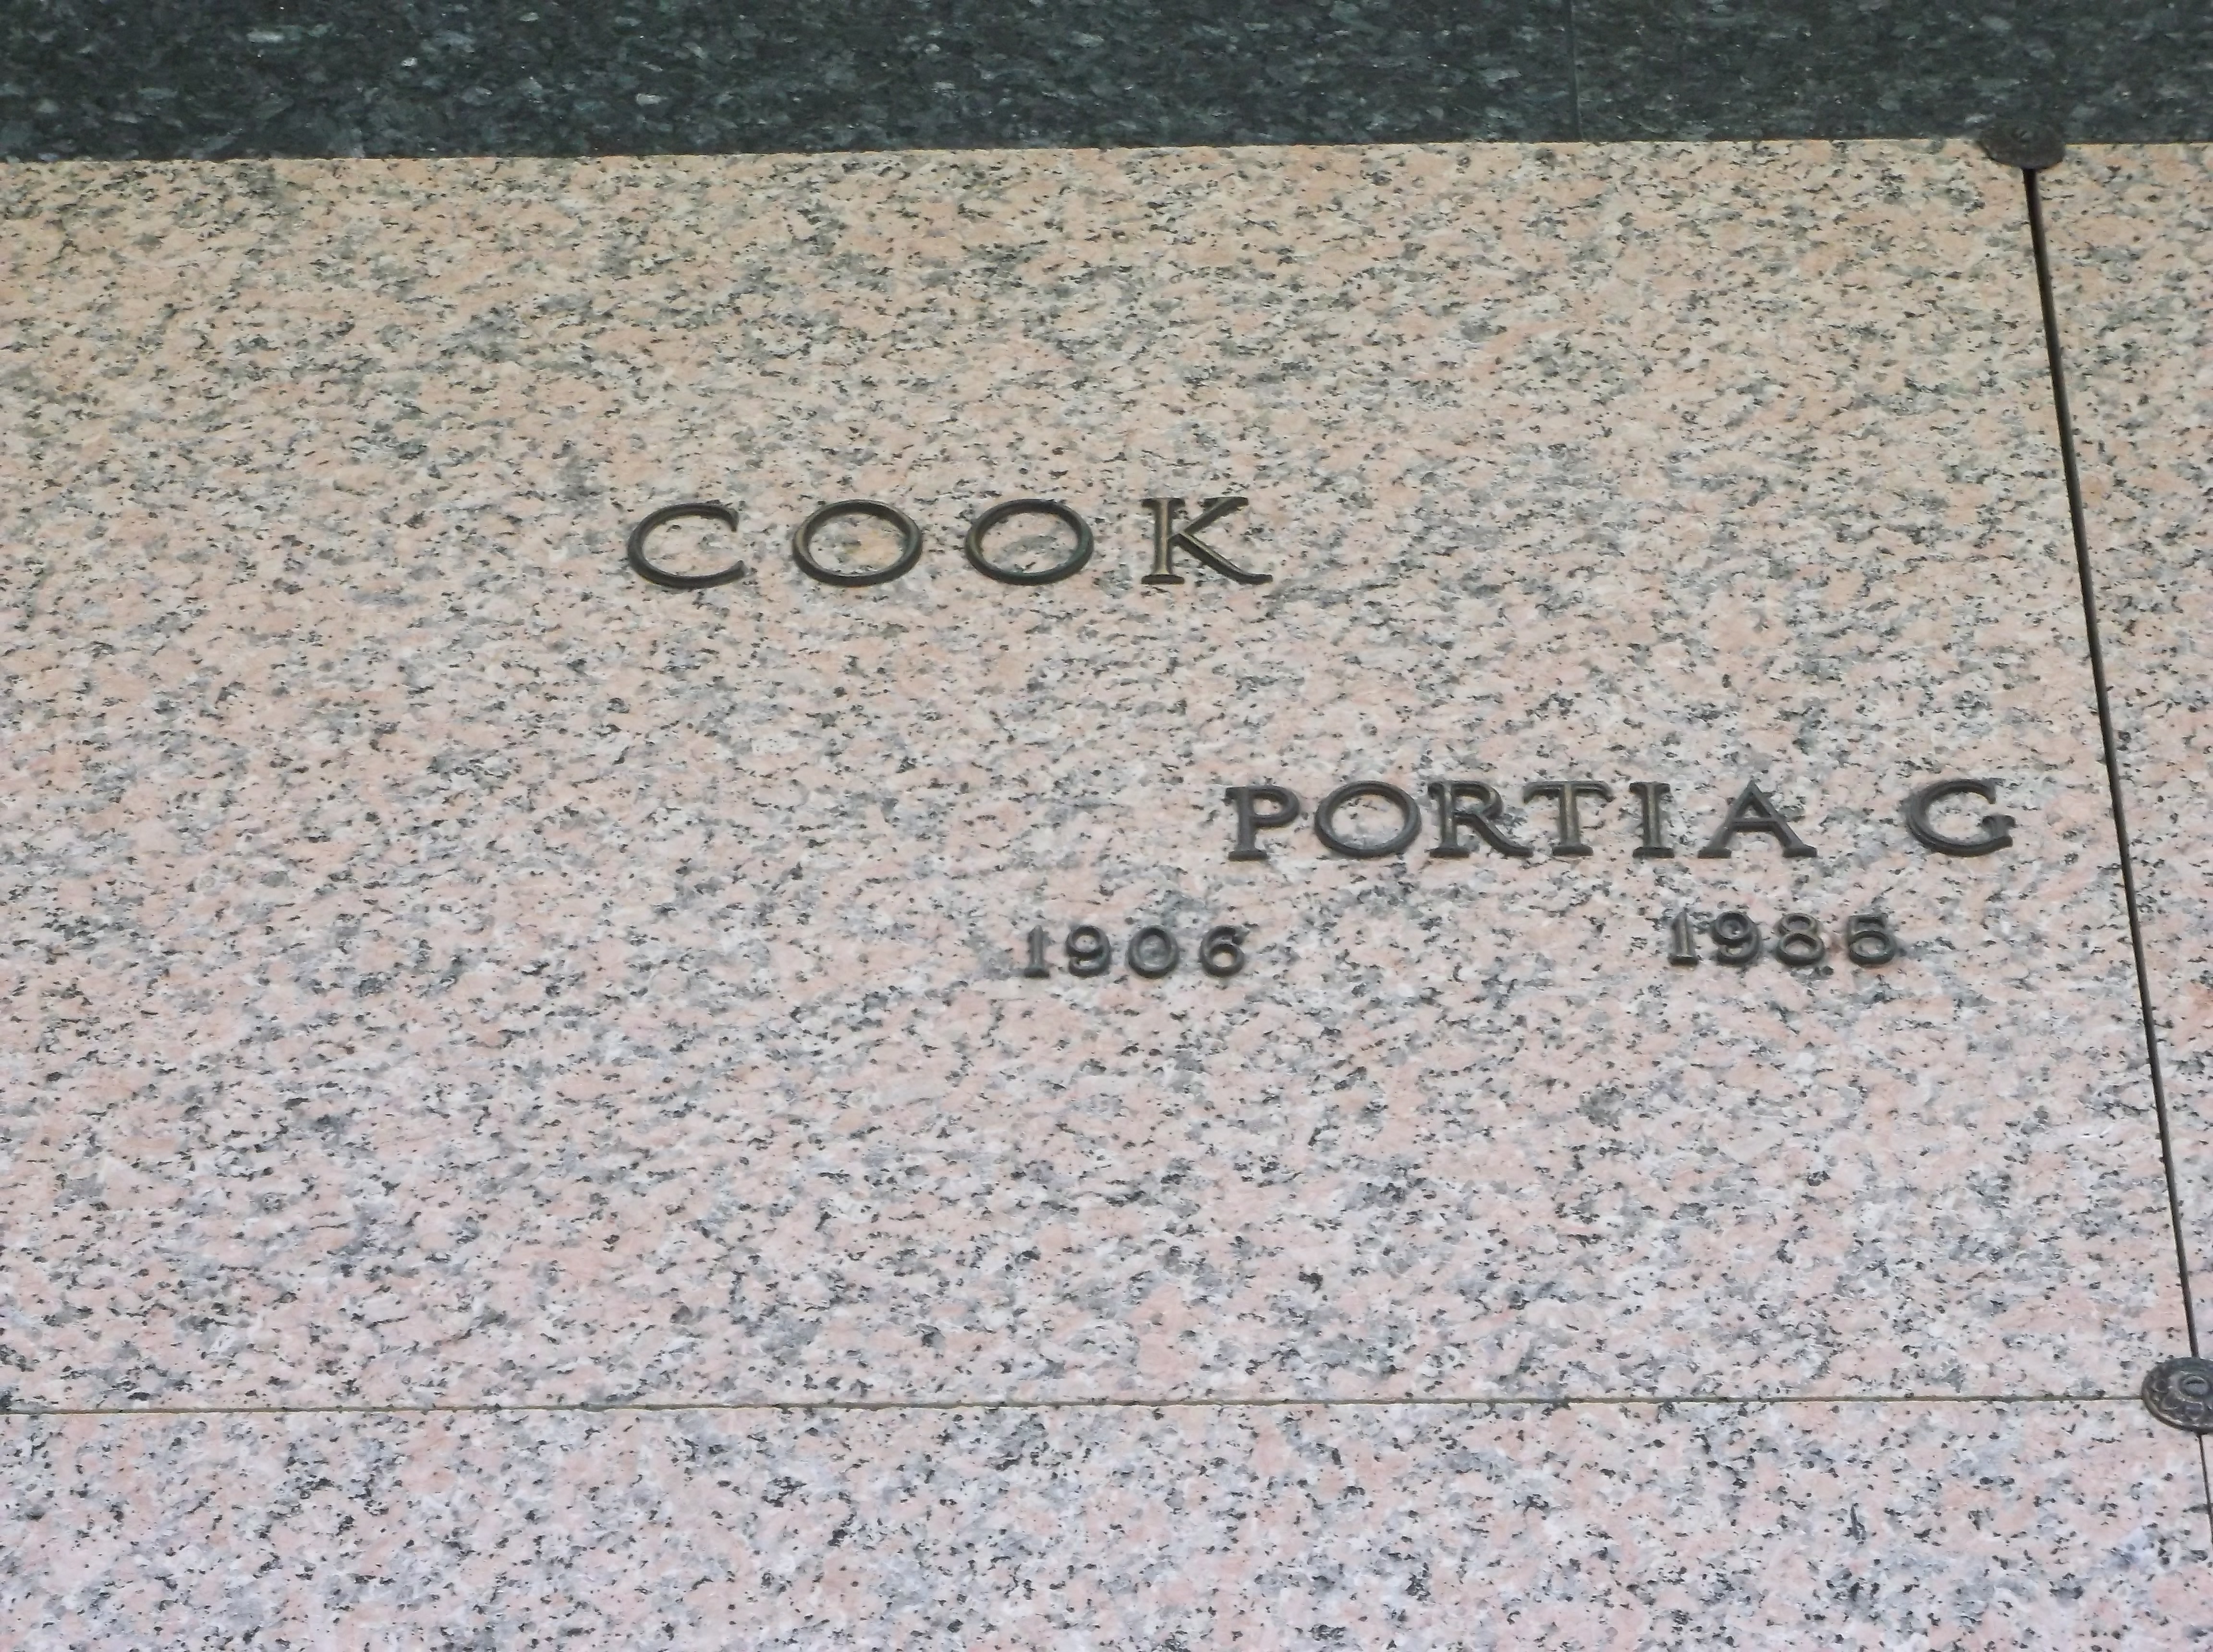 Portia G Cook